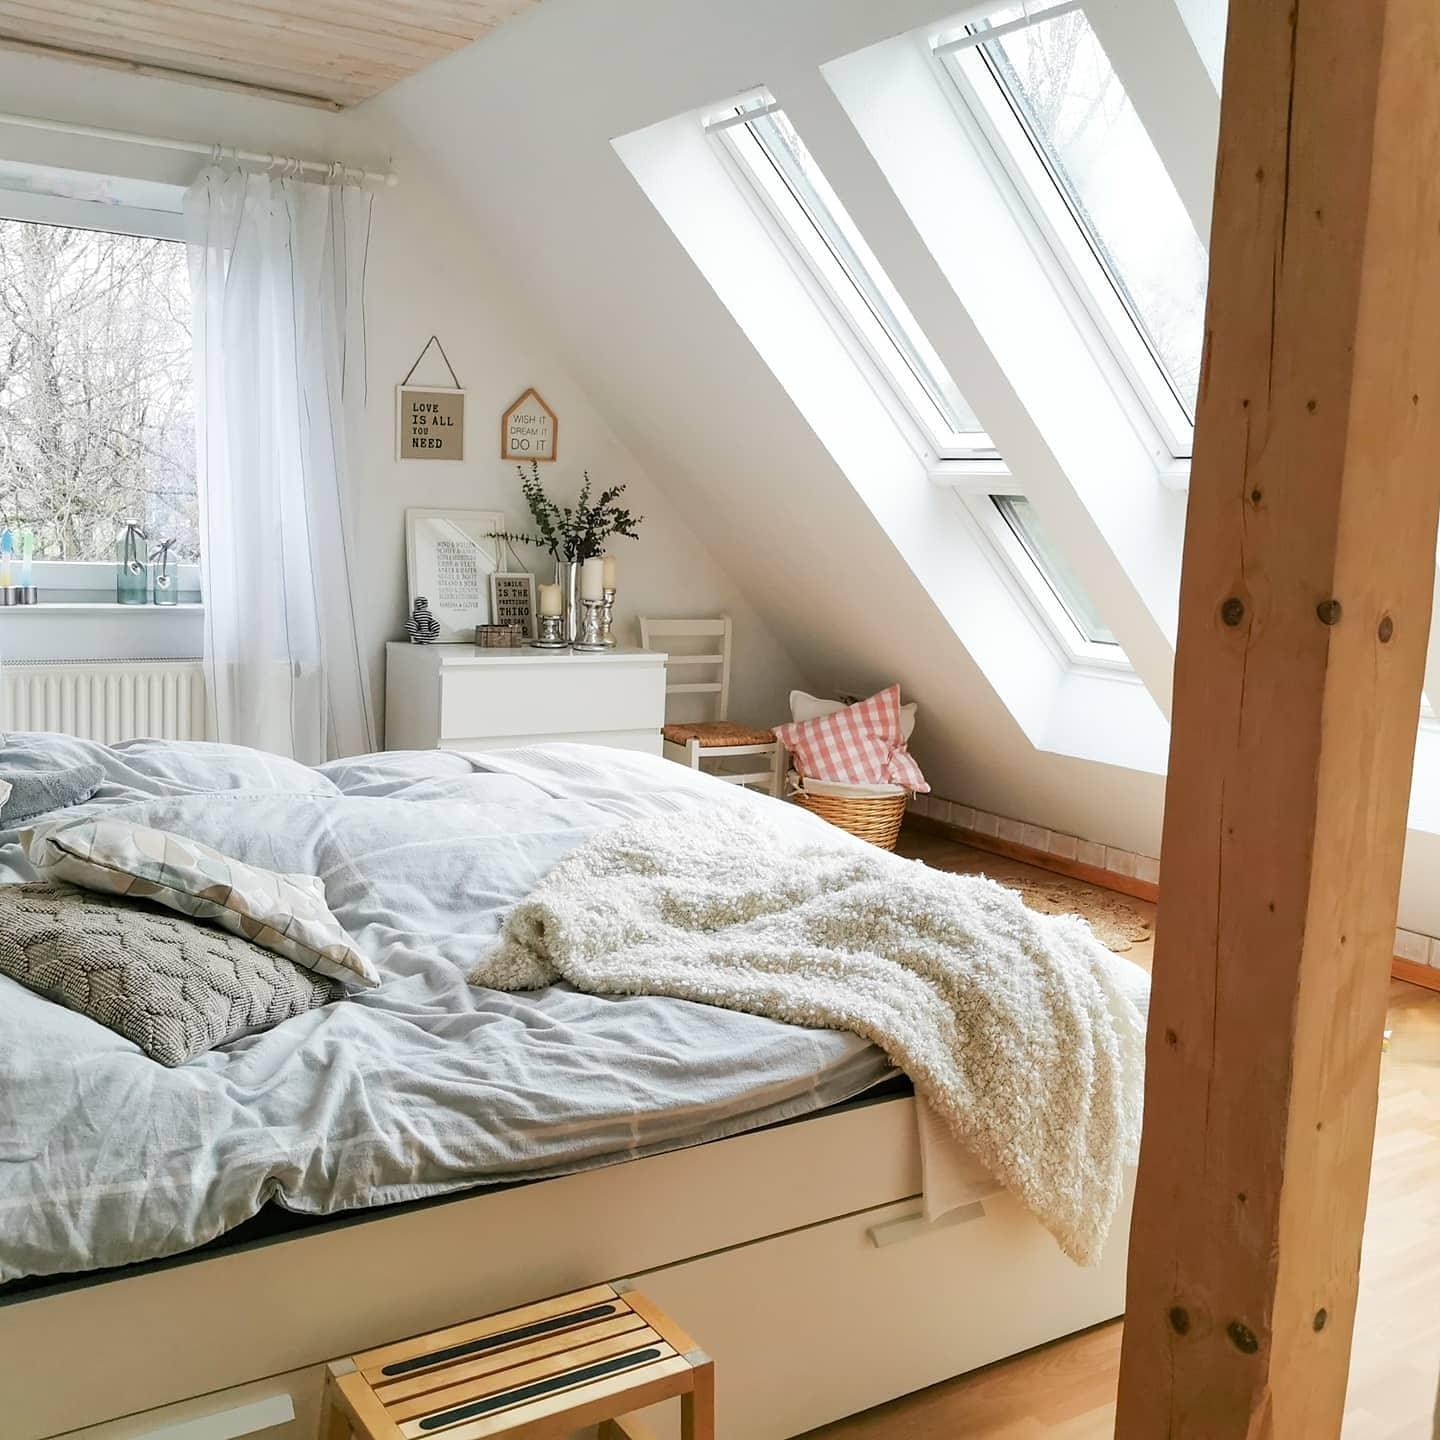 Hell und luftig trifft weiß auf Holz. #bedroom #schlafzimmer #dachfenster #couchliebt #dachgeschoss #holzbalken 